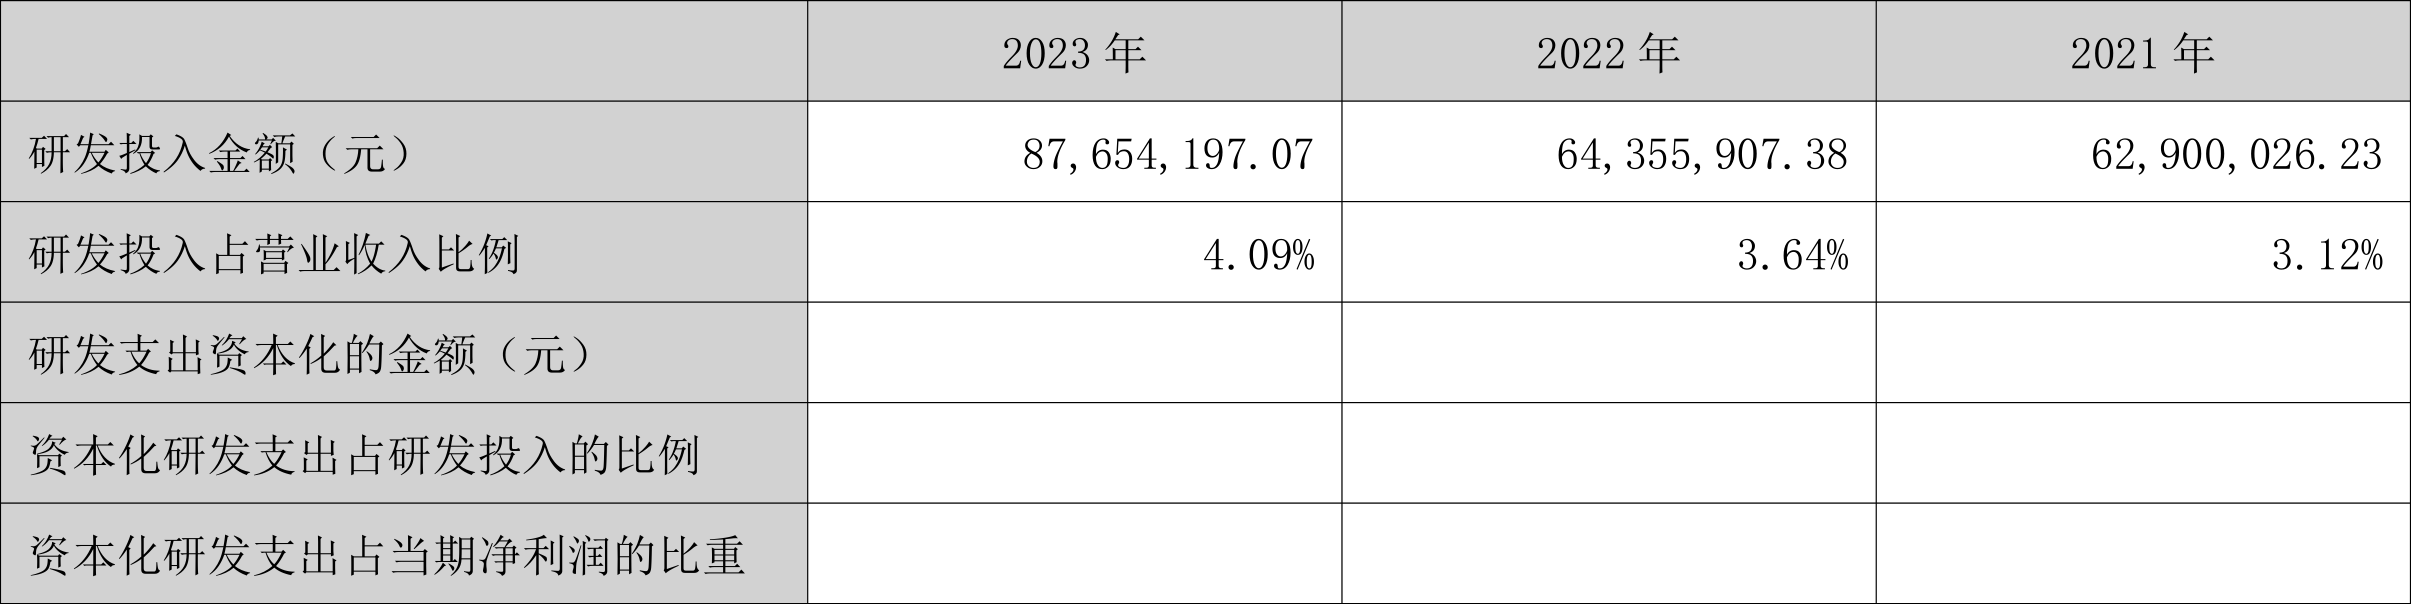 涛涛车业：2023年净利润同比增长36.09% 拟10派15元